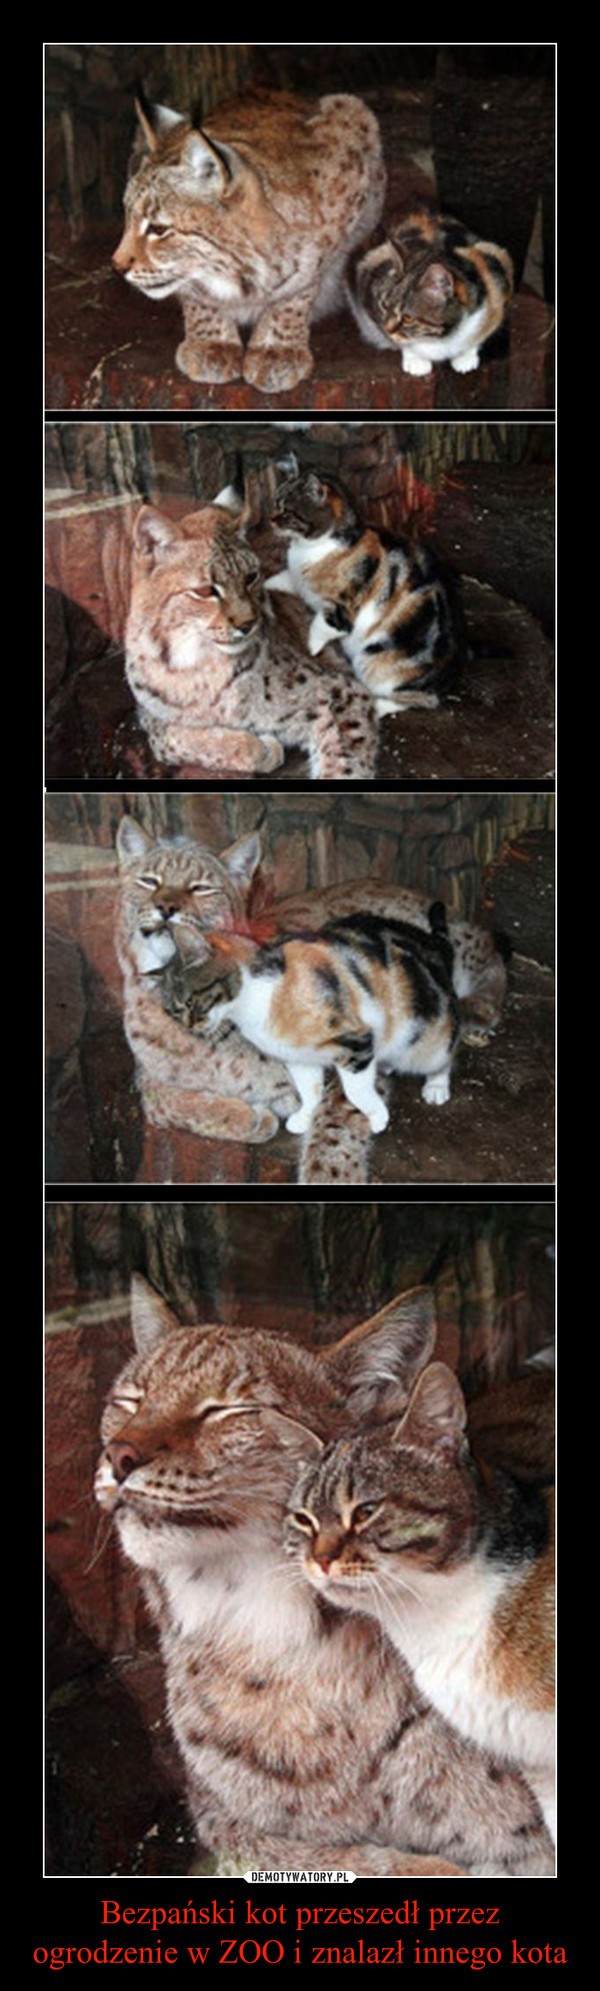 Bezpański kot przeszedł przez ogrodzenie w ZOO i znalazł innego kota –  